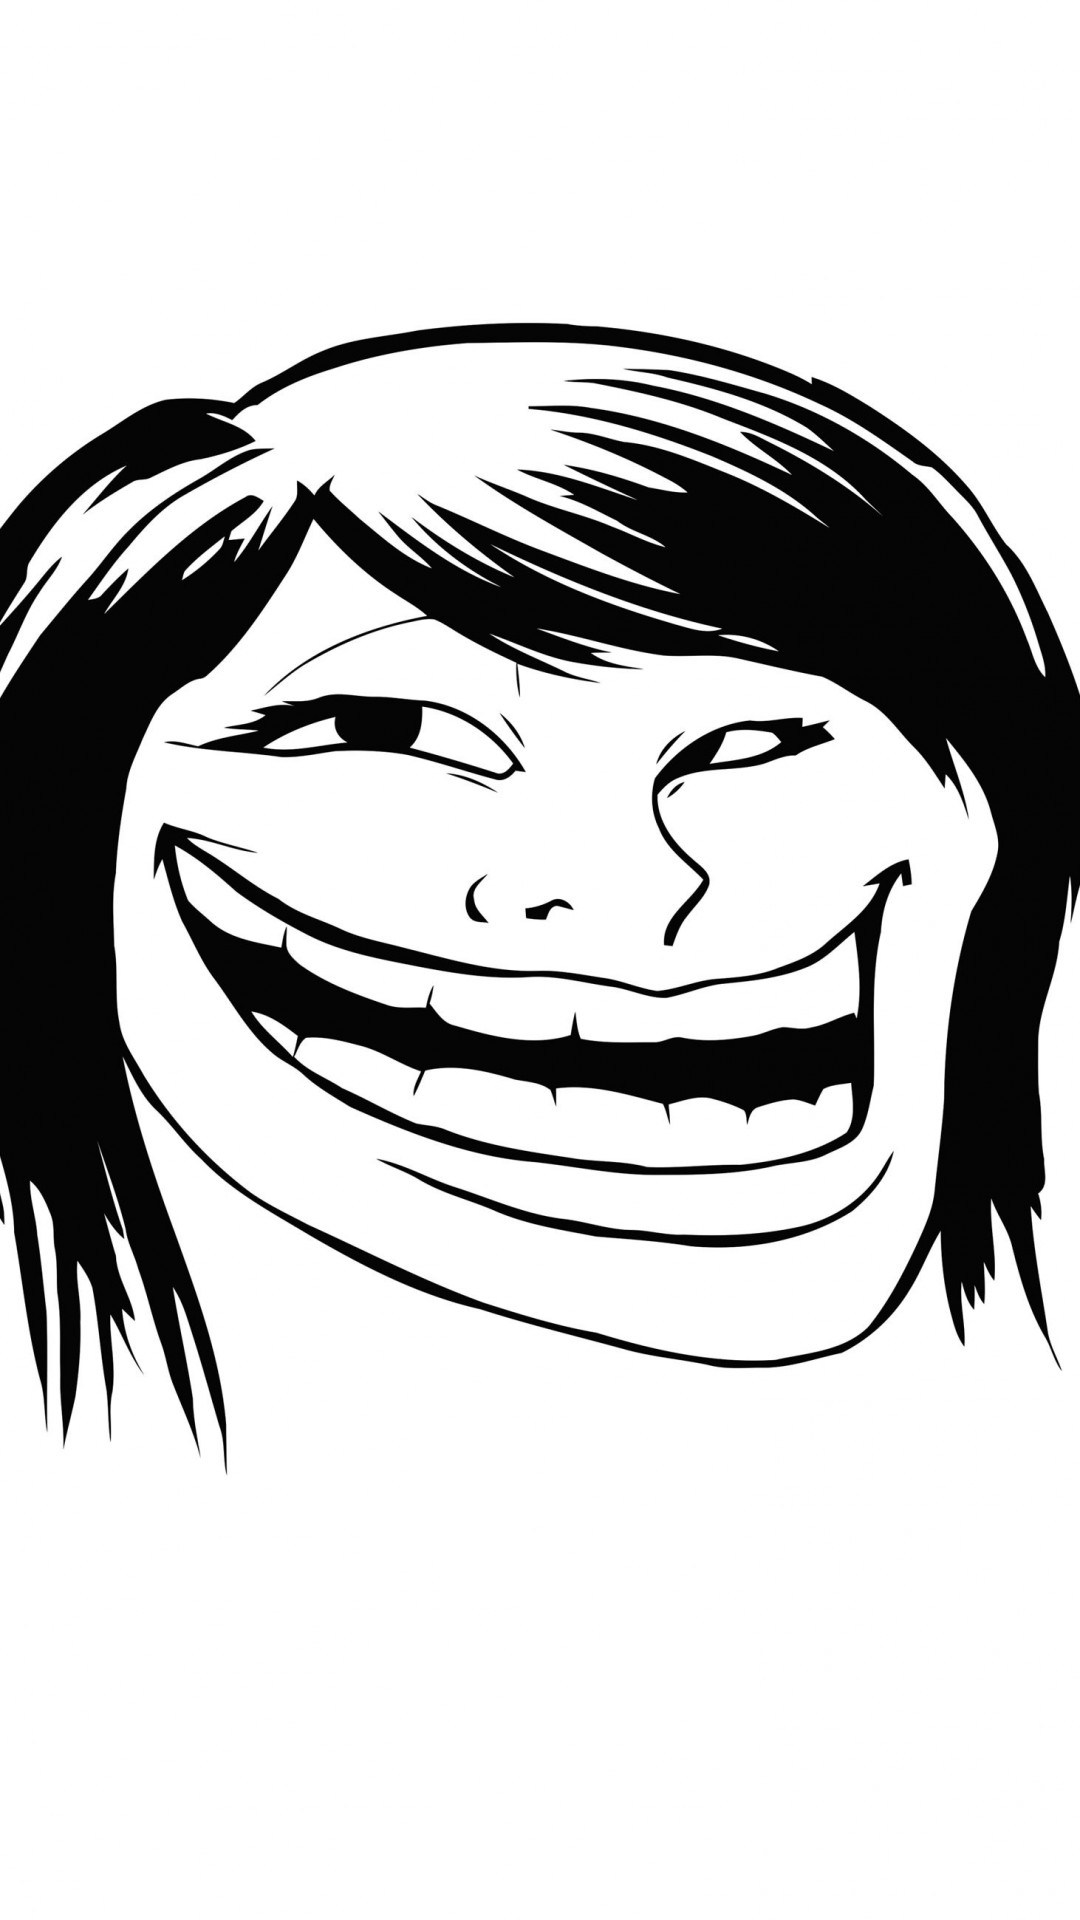 Female Troll Face Meme Wallpaper for LG G2